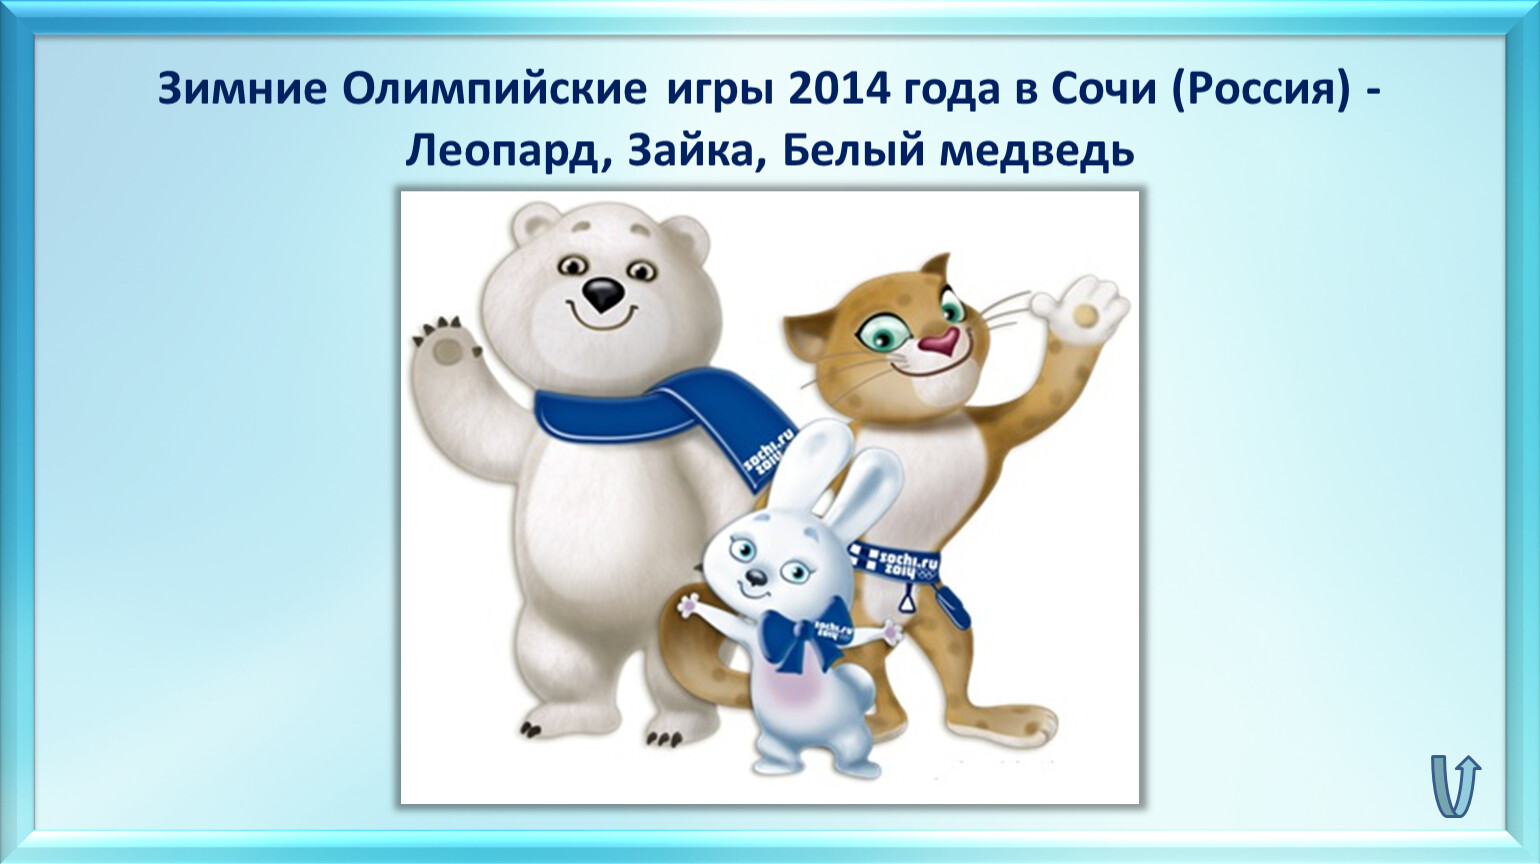 Талисманы игр в сочи в 2014 году. Олимпийский символ Сочи 2014 заяц. Олимпийский мишка в Сочи символ. Символы игр Сочи 2014 Олимпийских игр. Талисманы зимних Олимпийских игр 2014 года в Сочи.